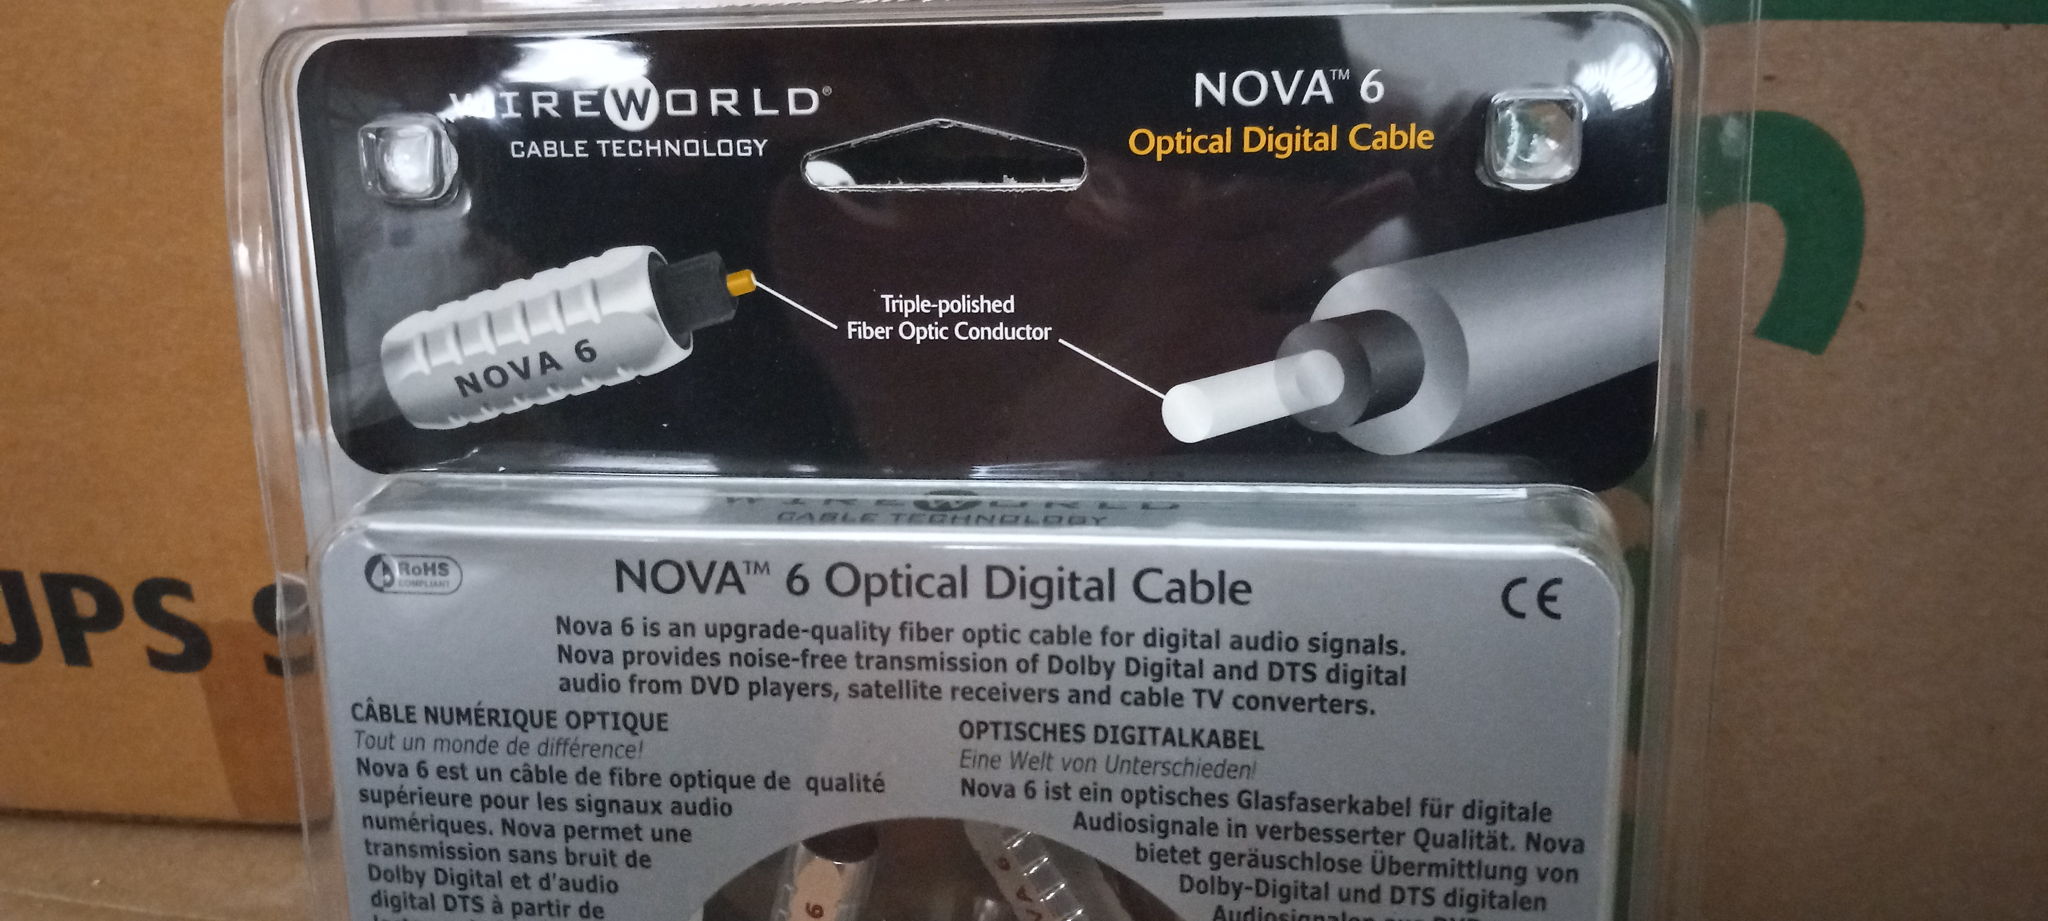 Wireworld Nova 6 Toslink Optical Digital Cable 1 meter 2